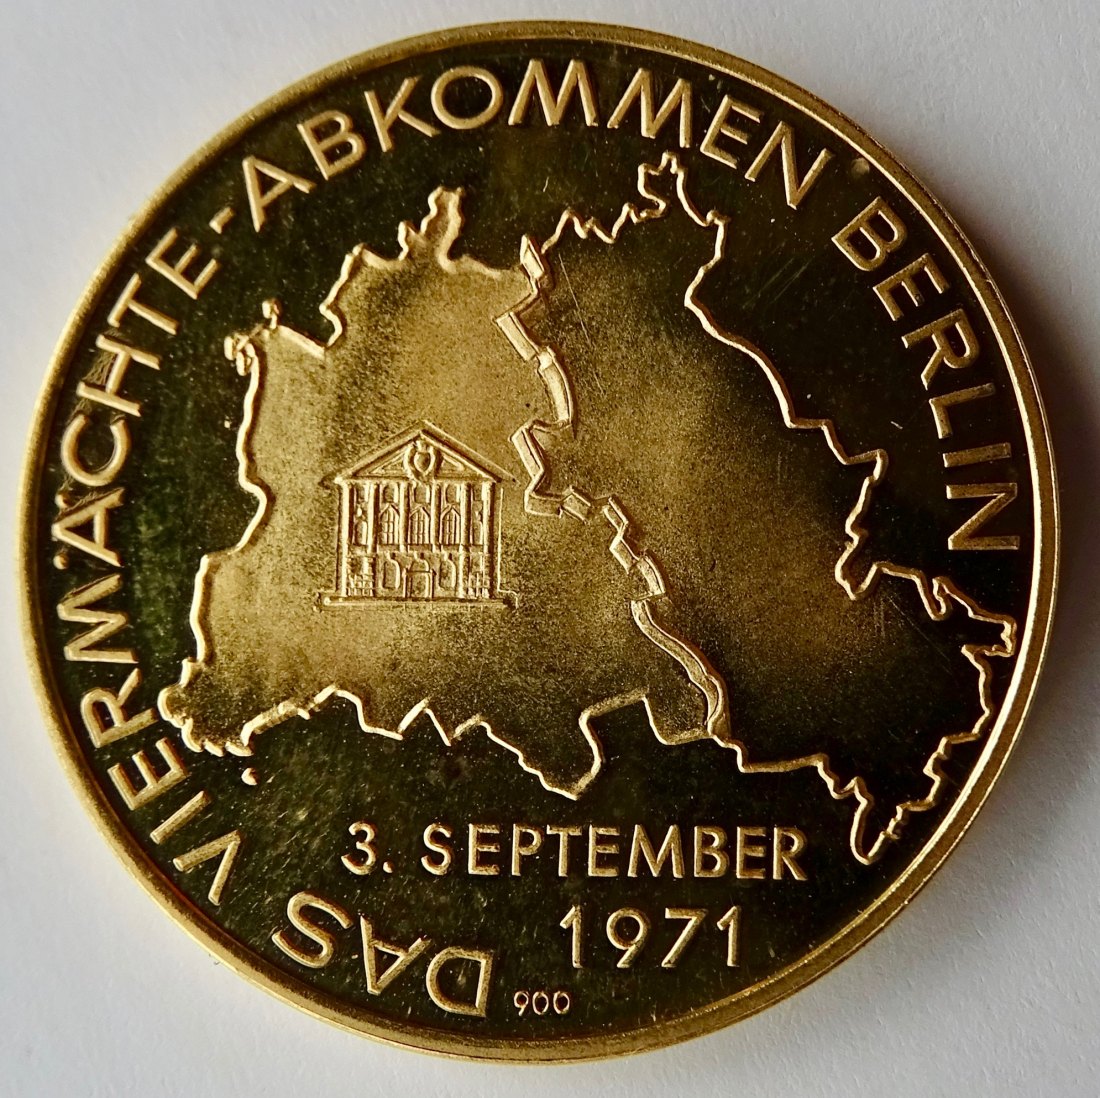  Berlin 1971 Goldmdaille zum 4-Mächteabkommen, der Anfang vom Ende des Kalten Krieges   